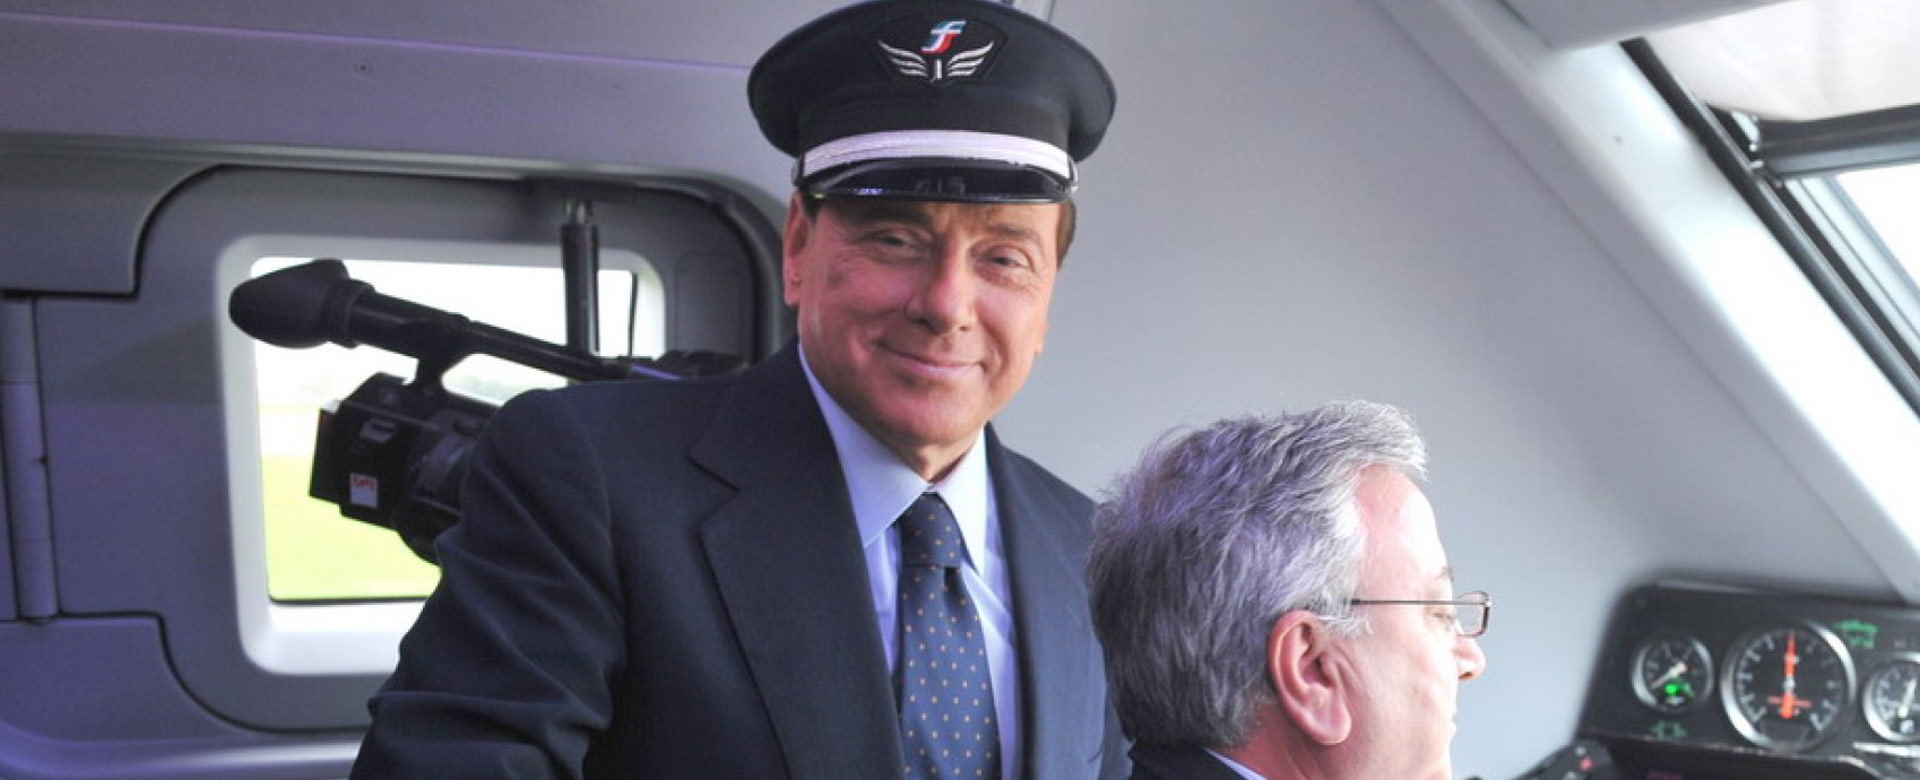 Silvio Berlusconi con cappello da ferroviere